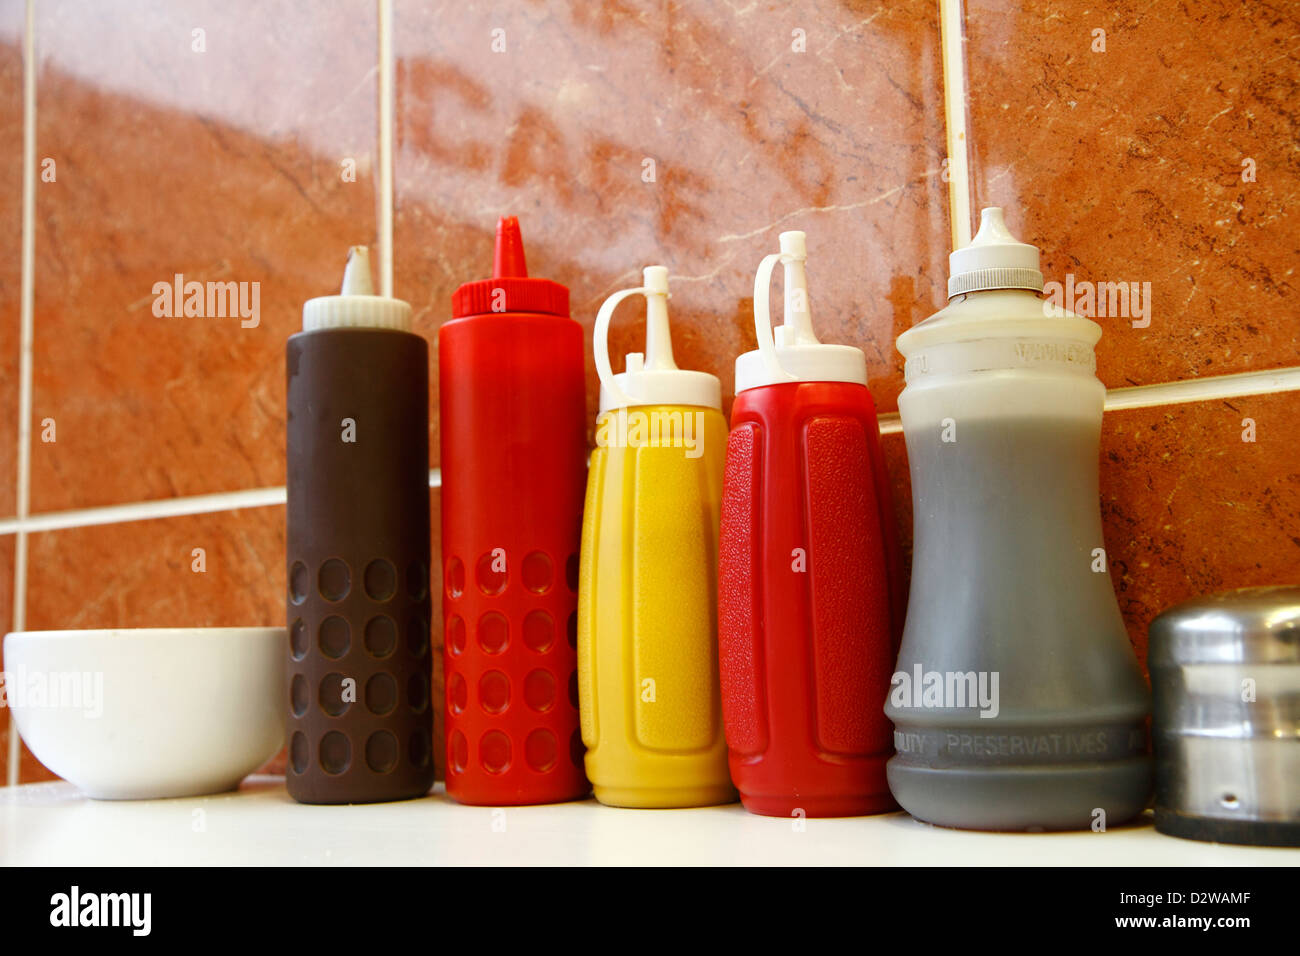 Bouteilles en plastique (condiment ketchup, sauce brune, moutarde, vinaigre) dans un café, Londres. Banque D'Images